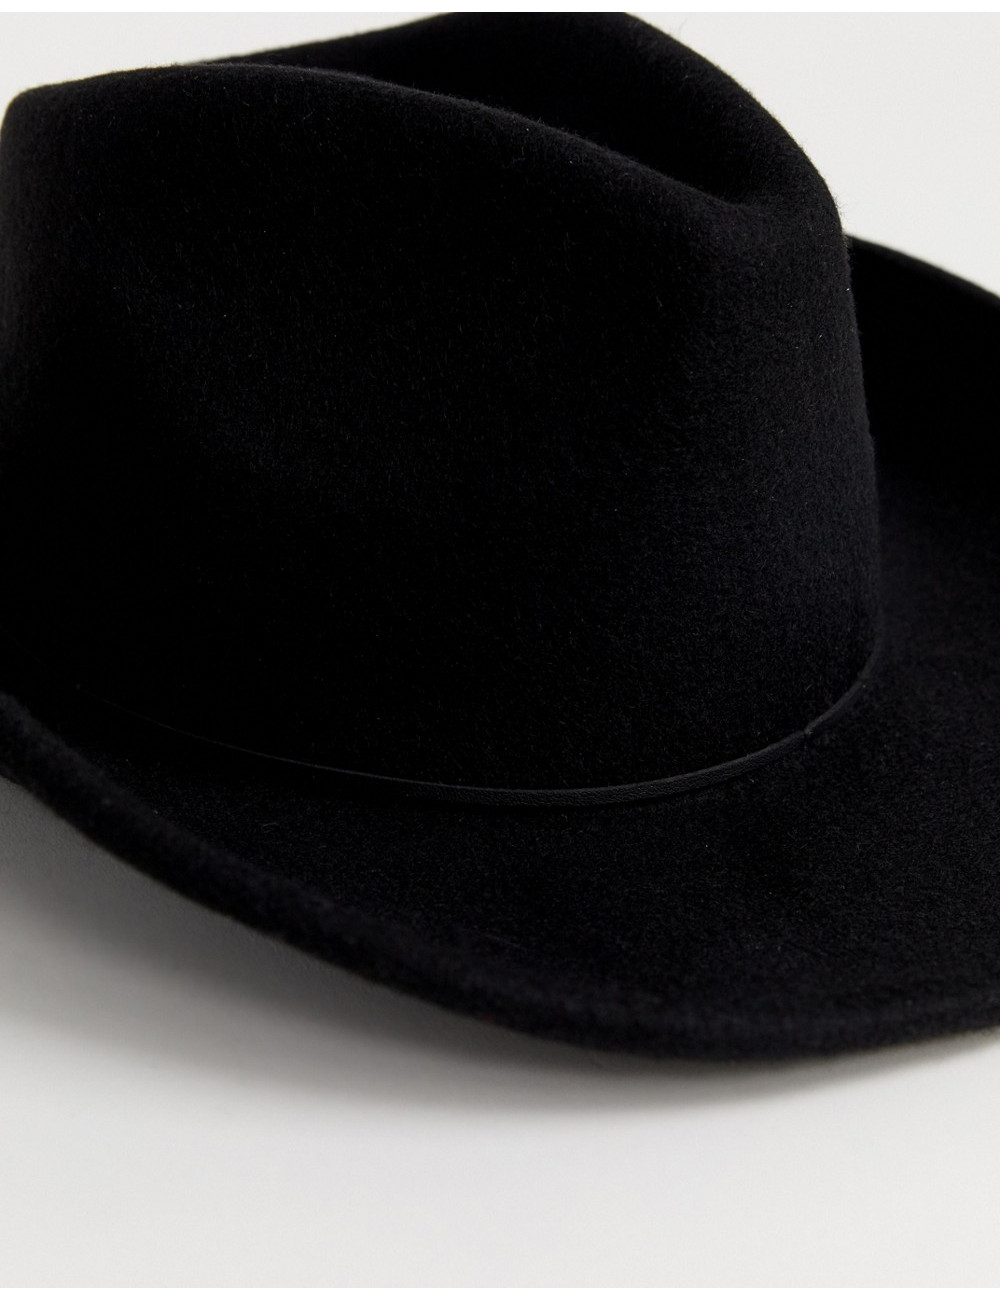 ASOS DESIGN felt cowboy hat